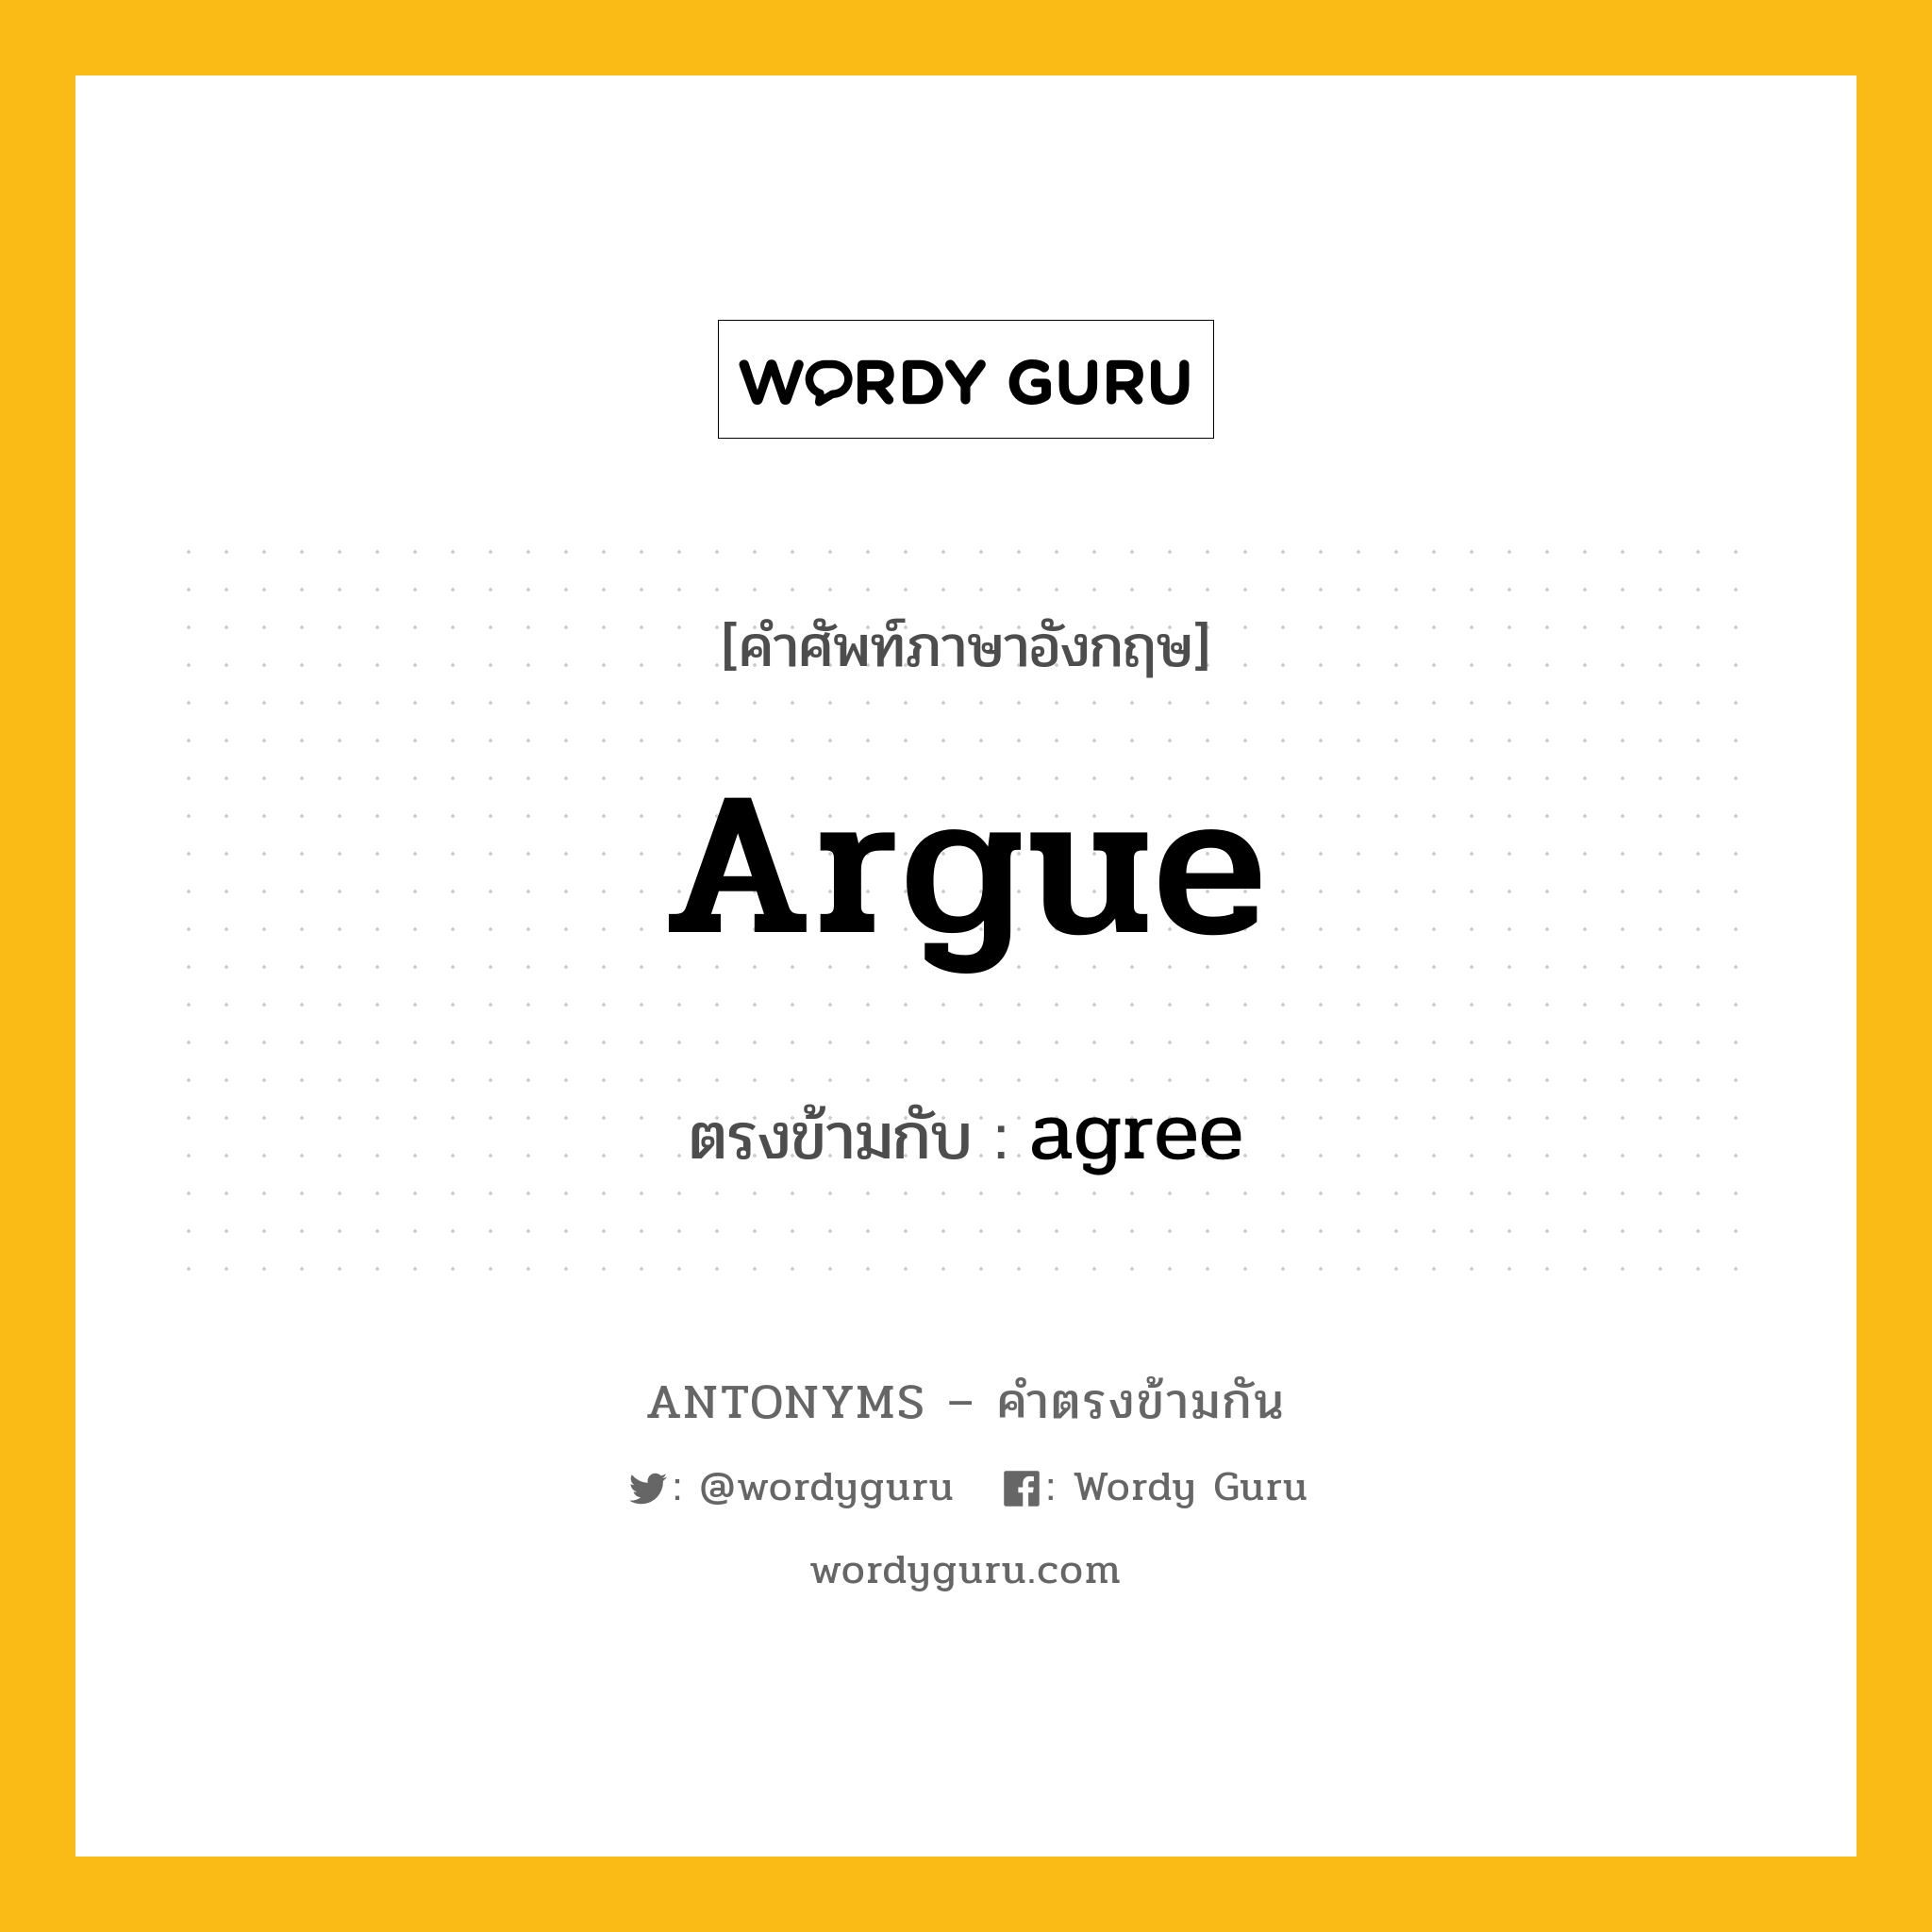 argue เป็นคำตรงข้ามกับคำไหนบ้าง?, คำศัพท์ภาษาอังกฤษ argue ตรงข้ามกับ agree หมวด agree